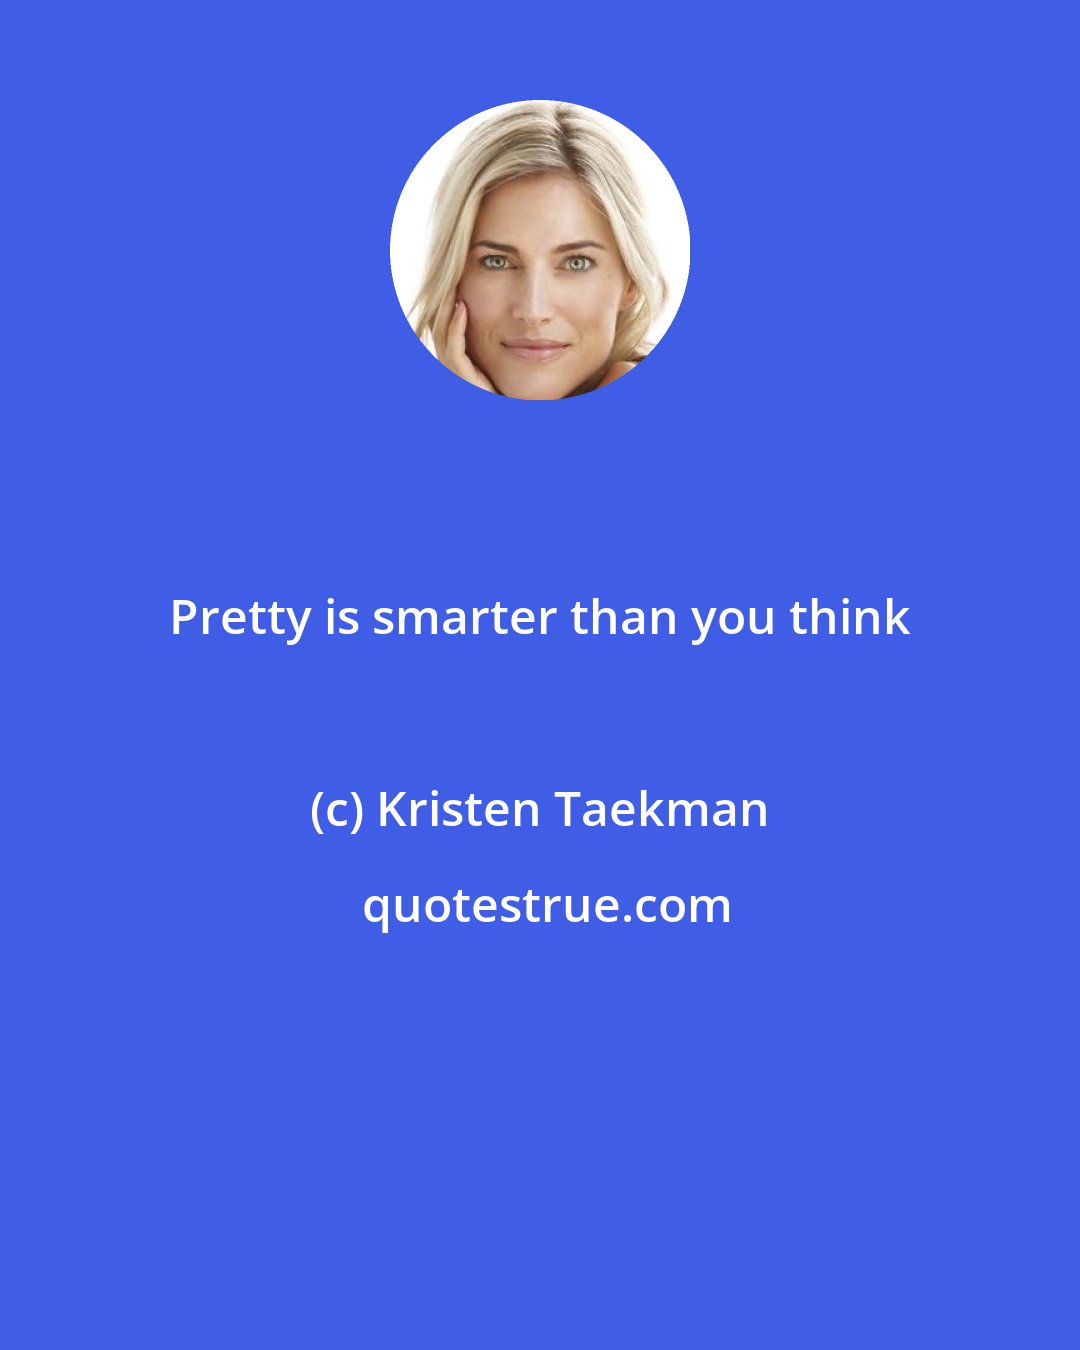 Kristen Taekman: Pretty is smarter than you think